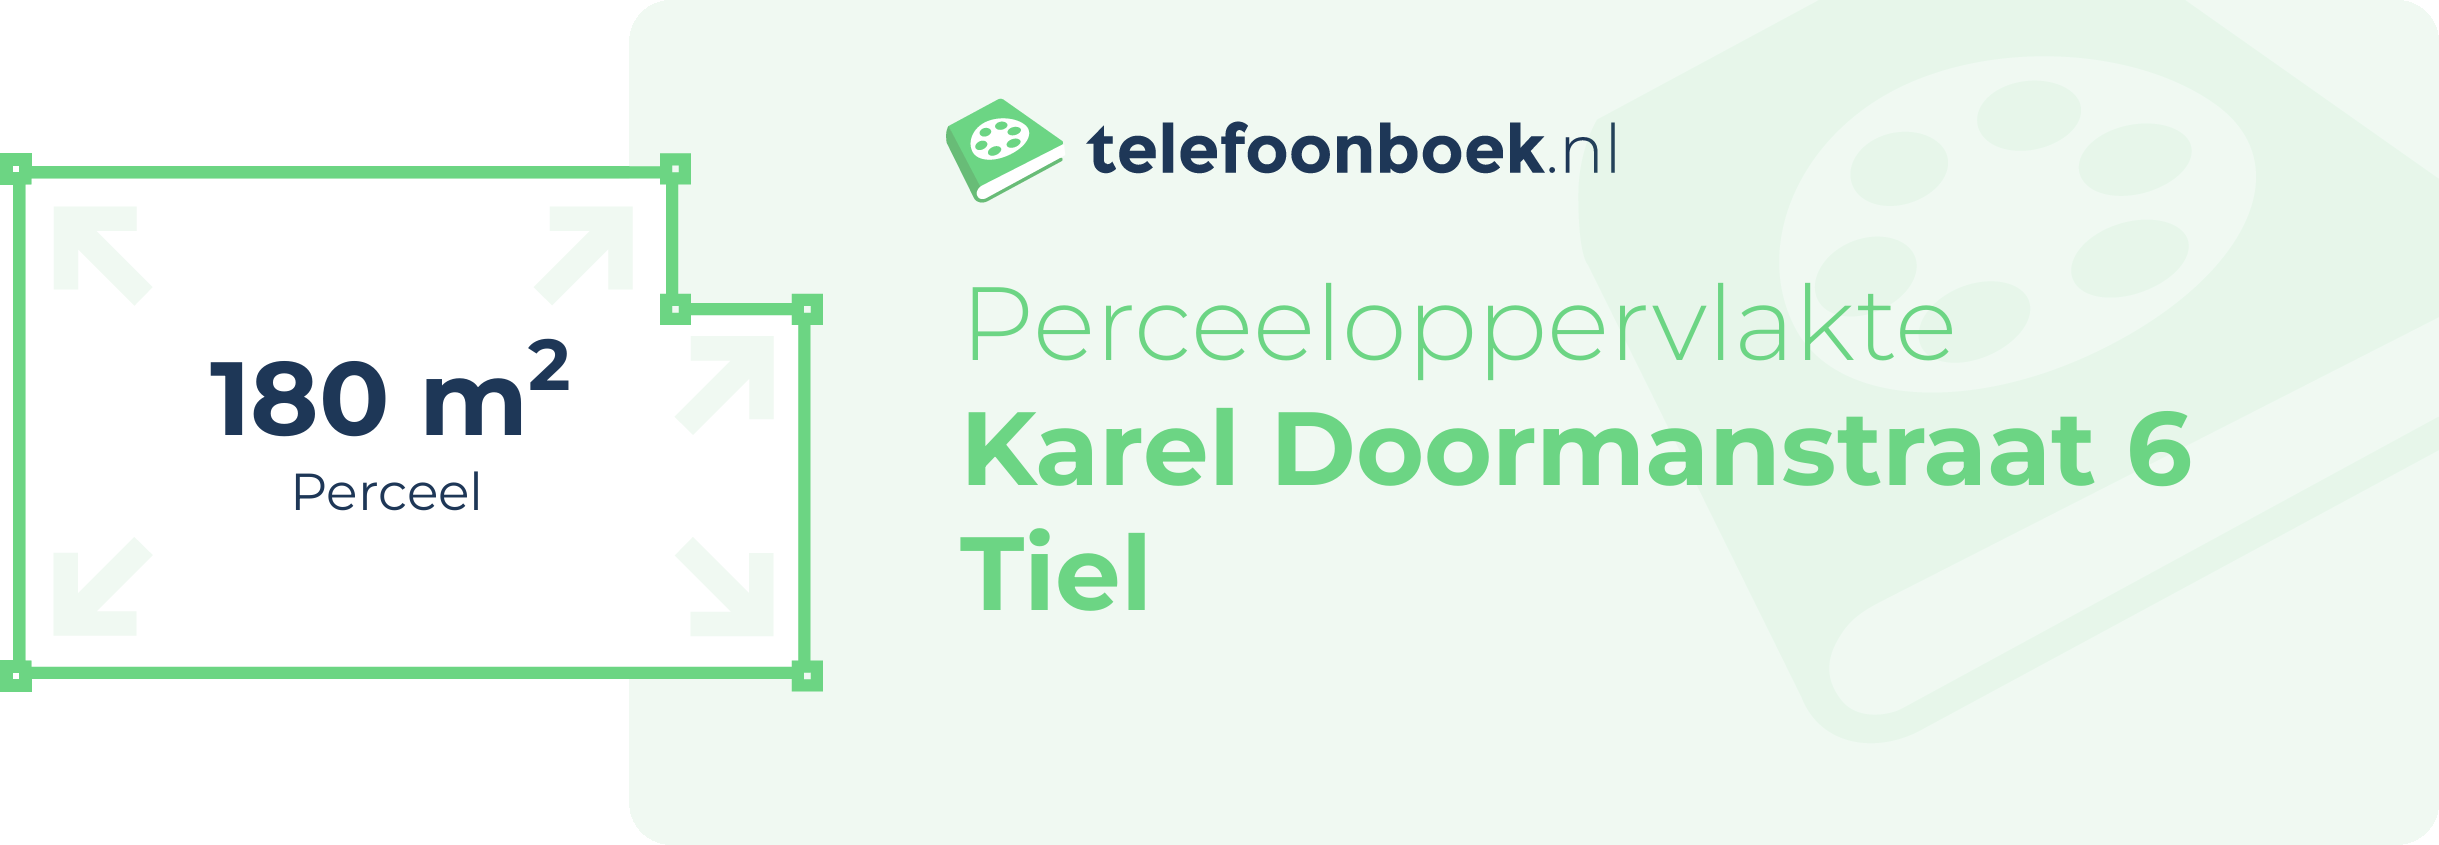 Perceeloppervlakte Karel Doormanstraat 6 Tiel